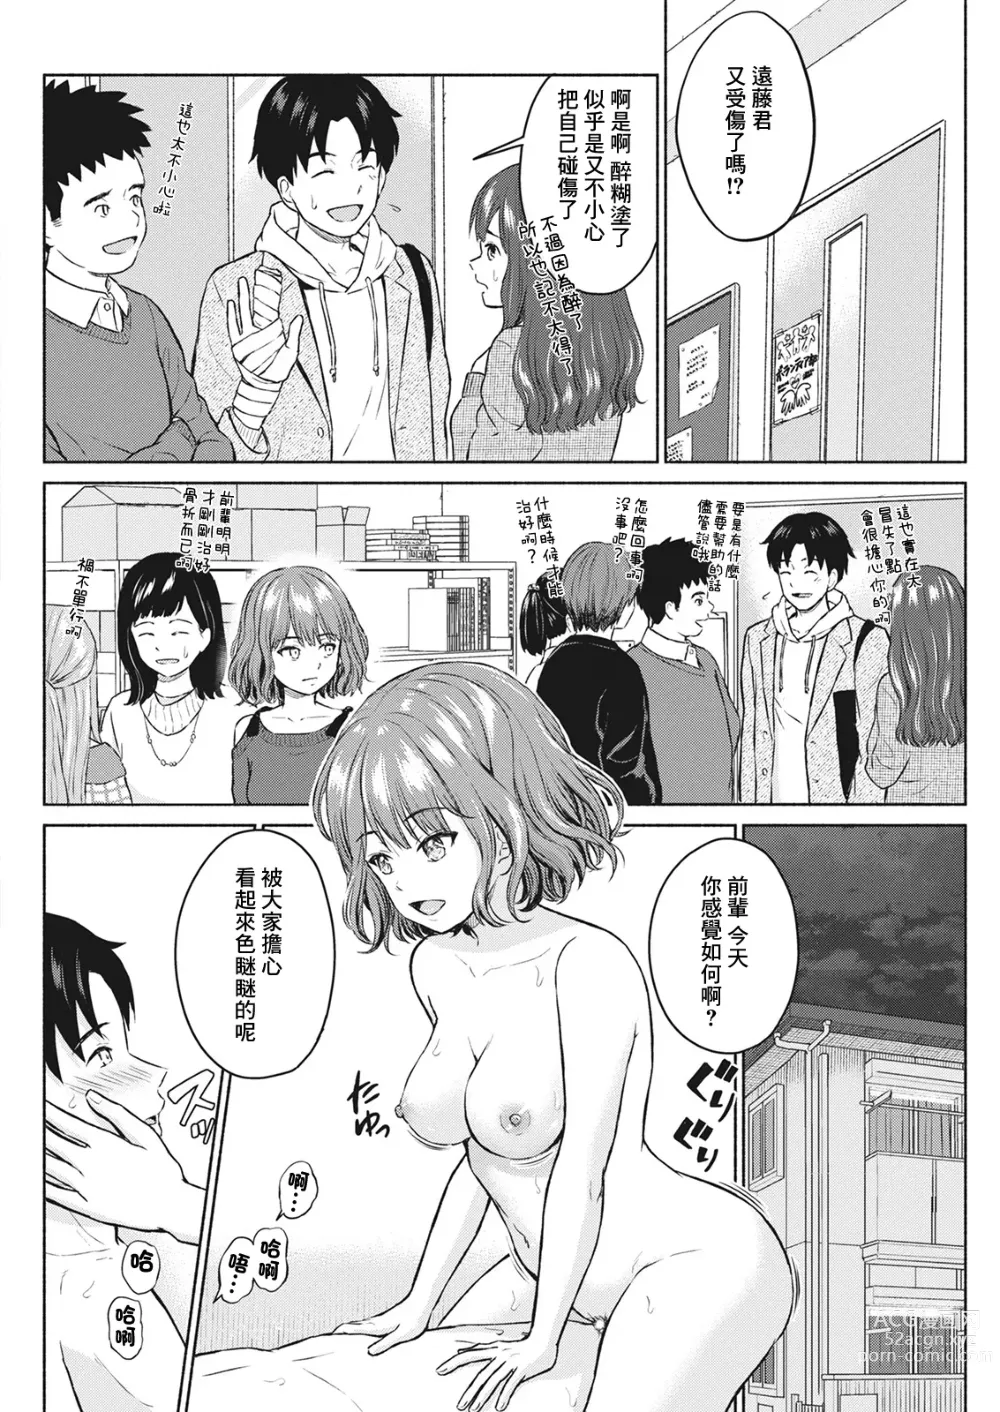 Page 14 of manga Sukisuki Daisuki Chouchou Aishiteru